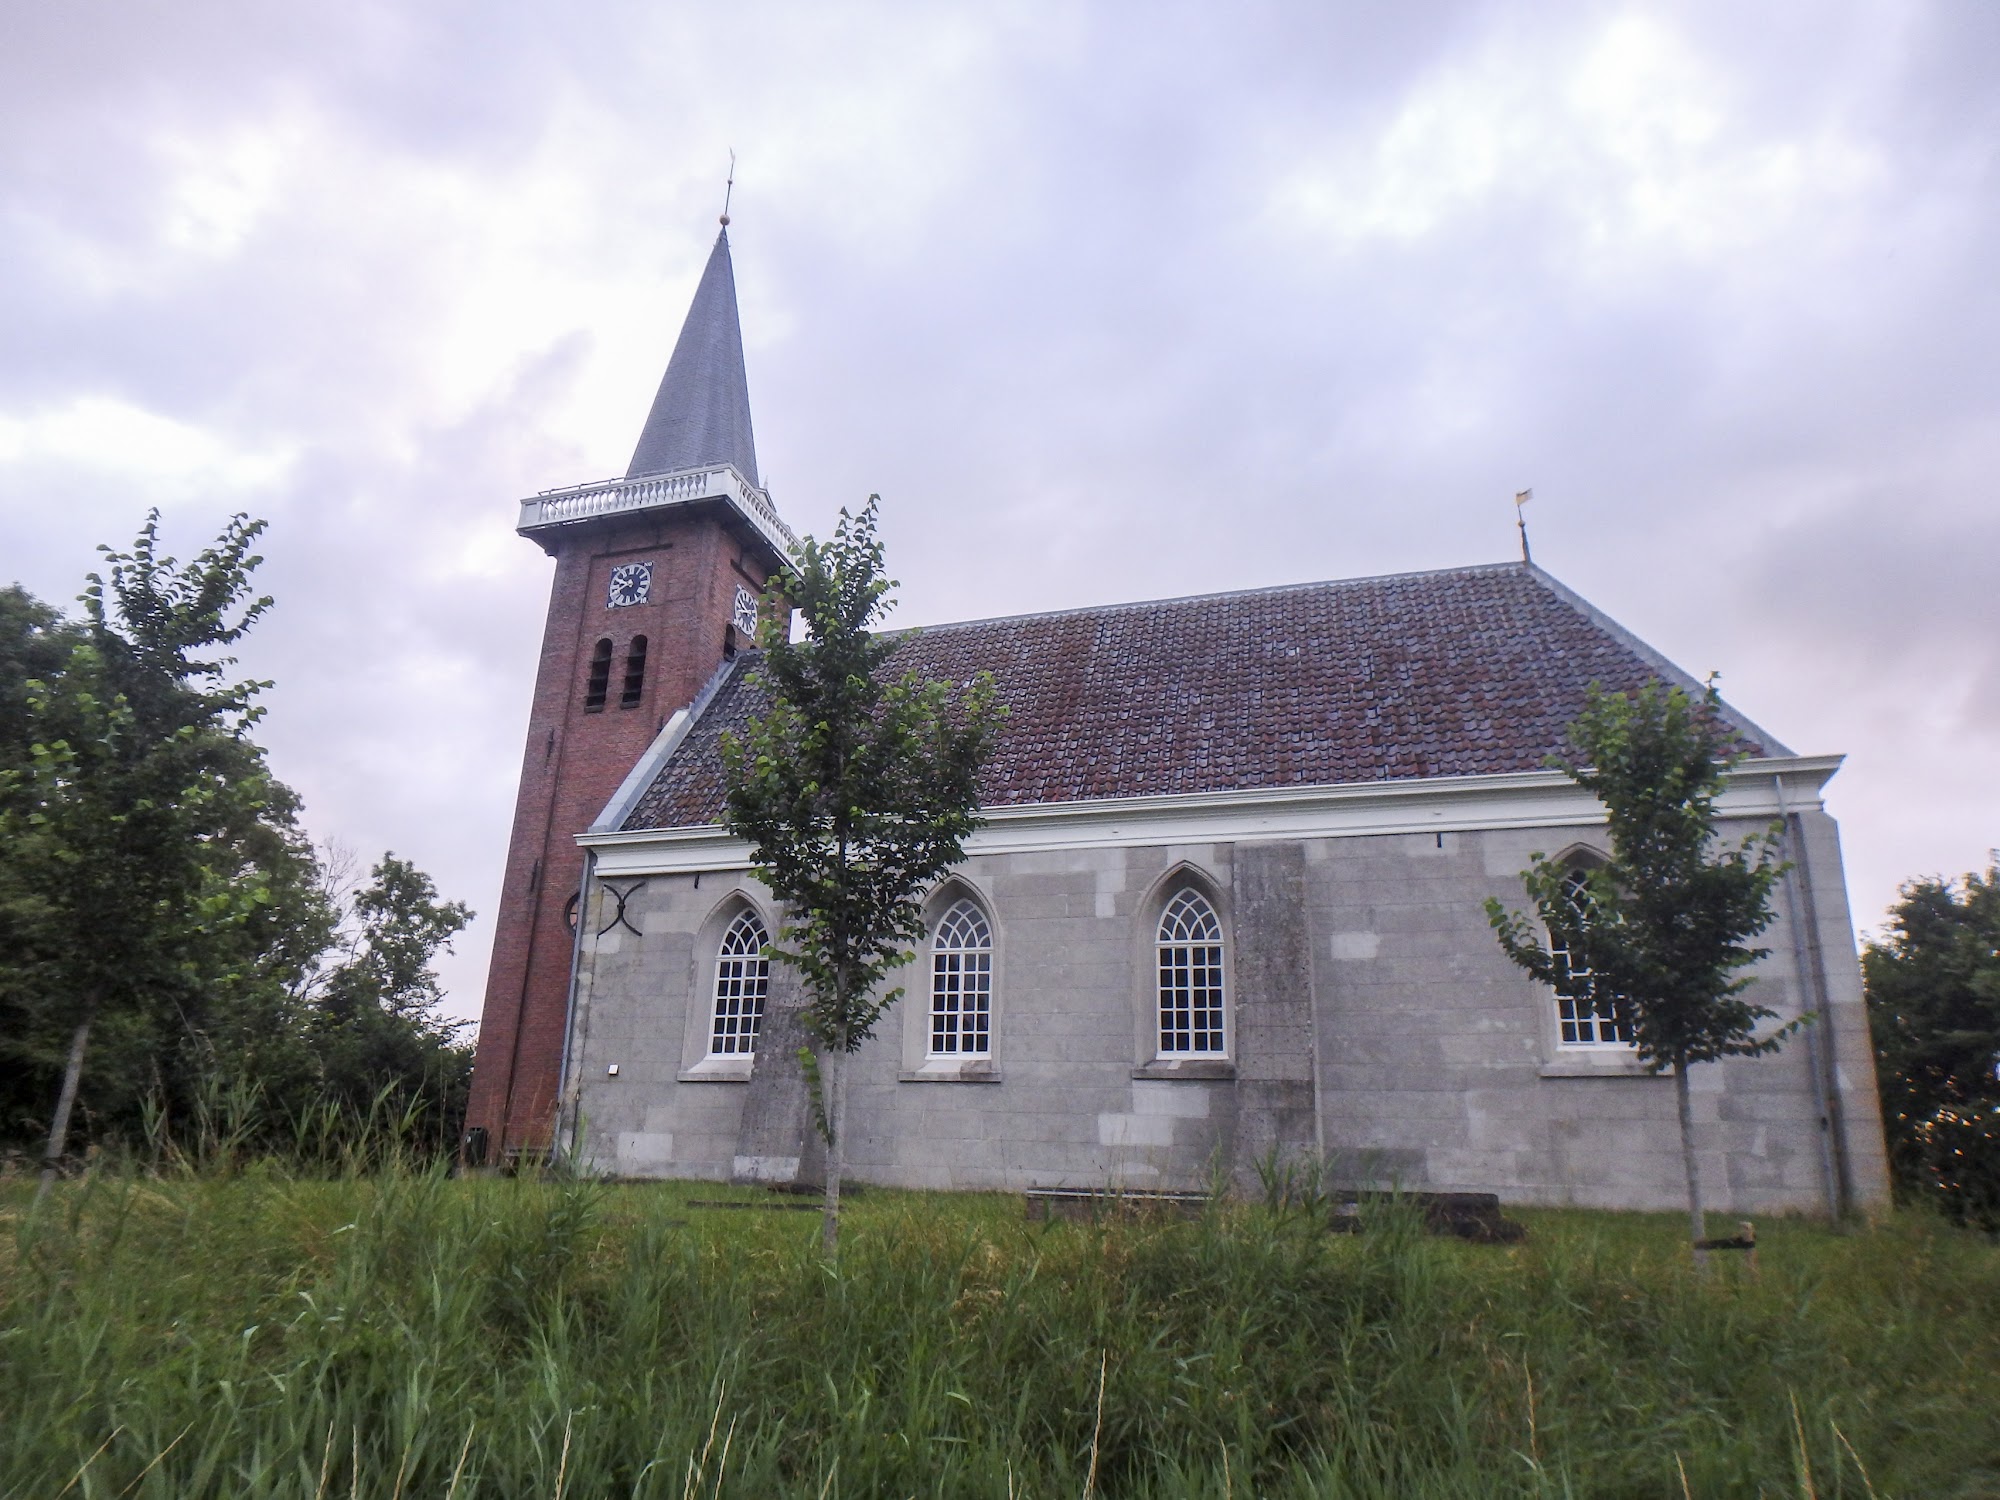 Kerk van Saaxumhuizen